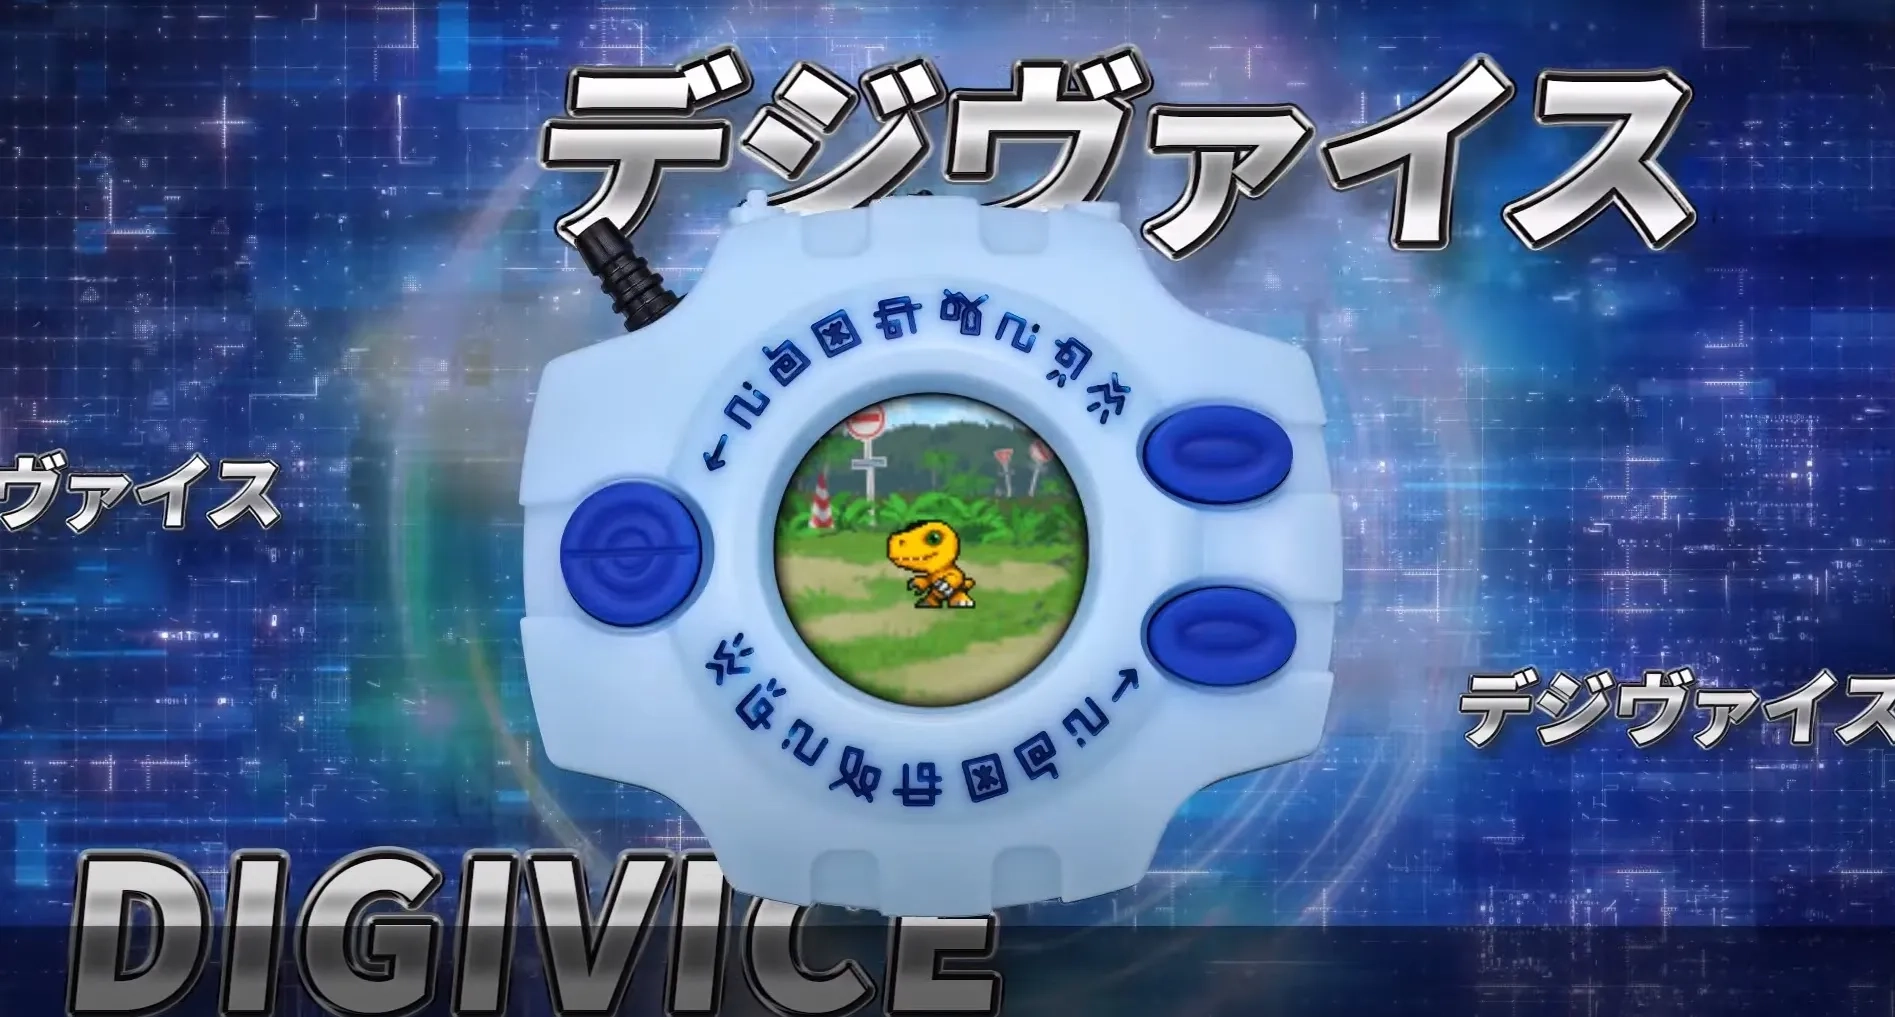 Digimon celebra su 25 aniversario con estos increíbles Digivice